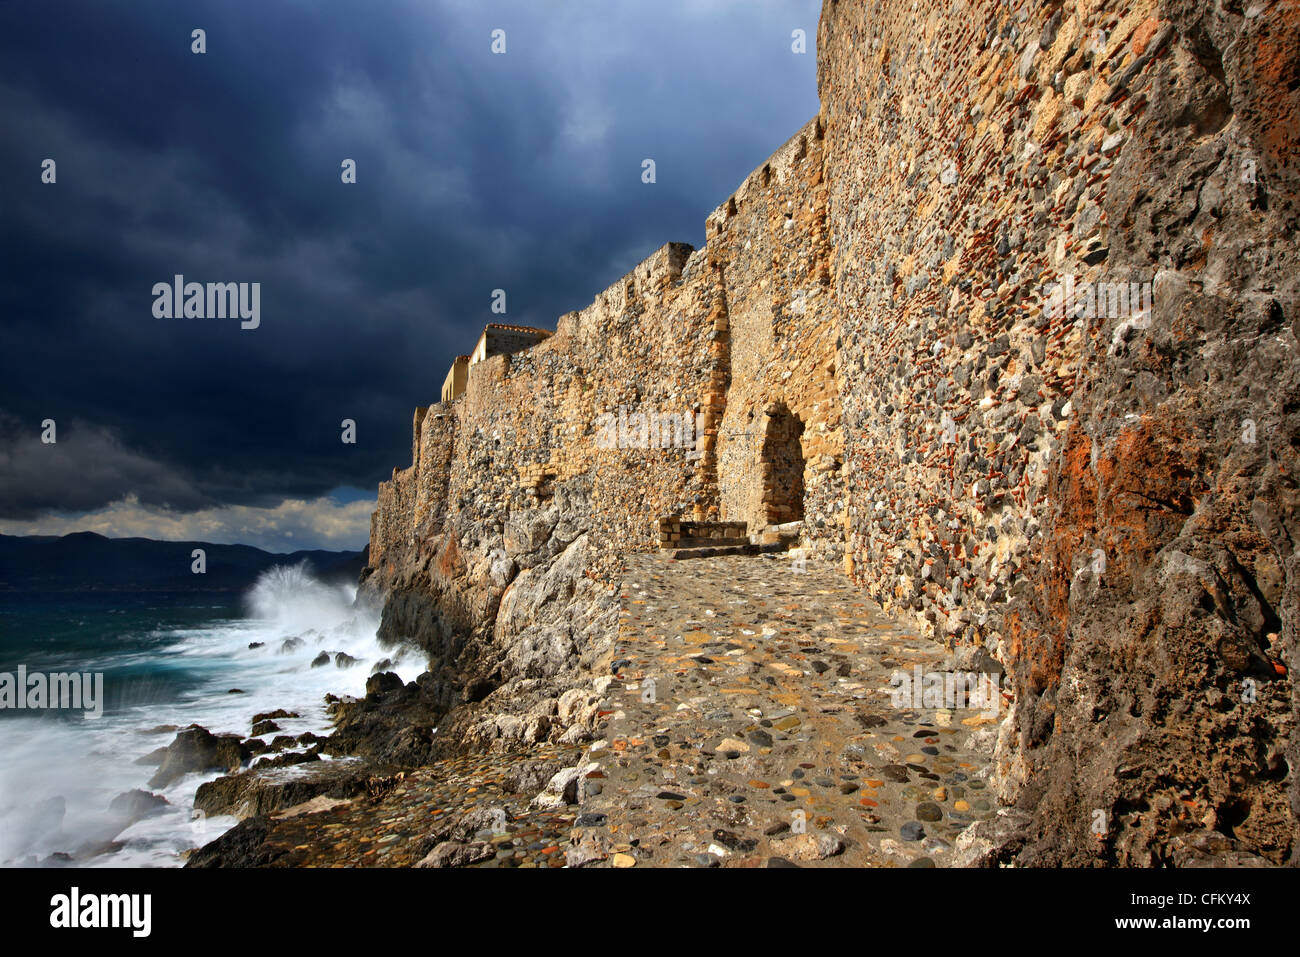 Teil der großen Wände der Castletown von Monemvasia, in der Nähe von "Portello", das einzige Tor des Schlosses bis zum Meer. Griechenland Stockfoto